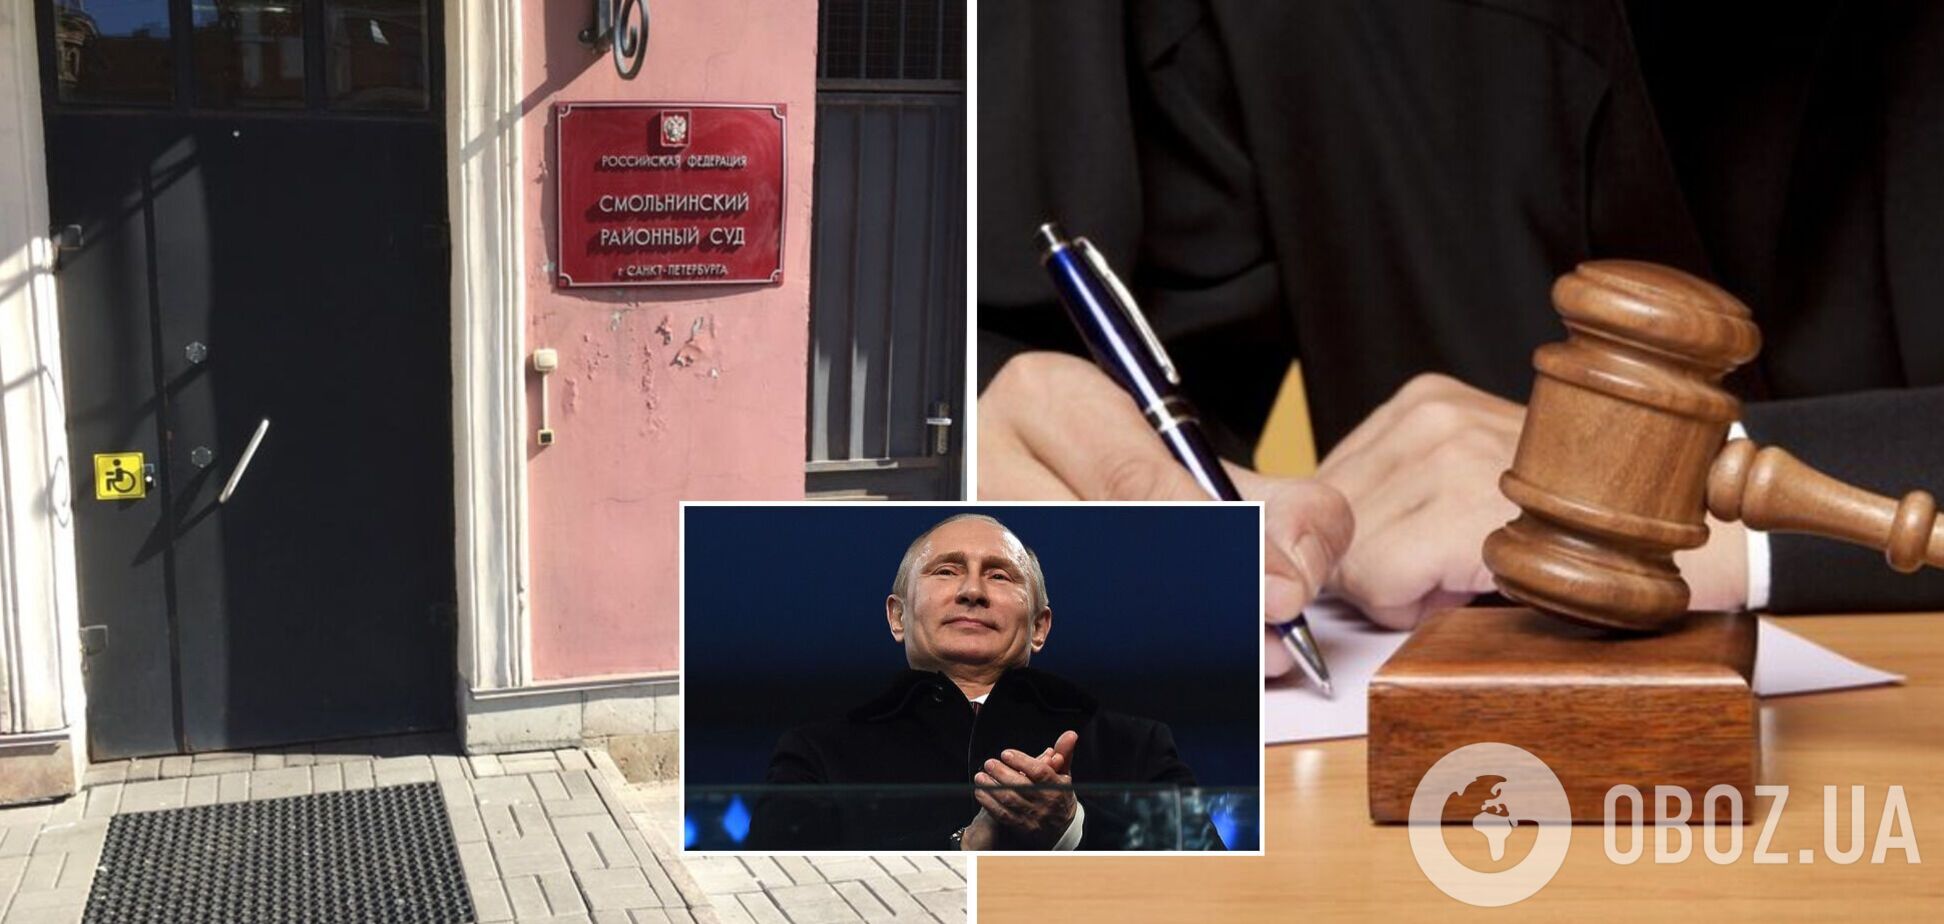 Суд оштрафовал питерских депутатов, которые потребовали отставки Путина